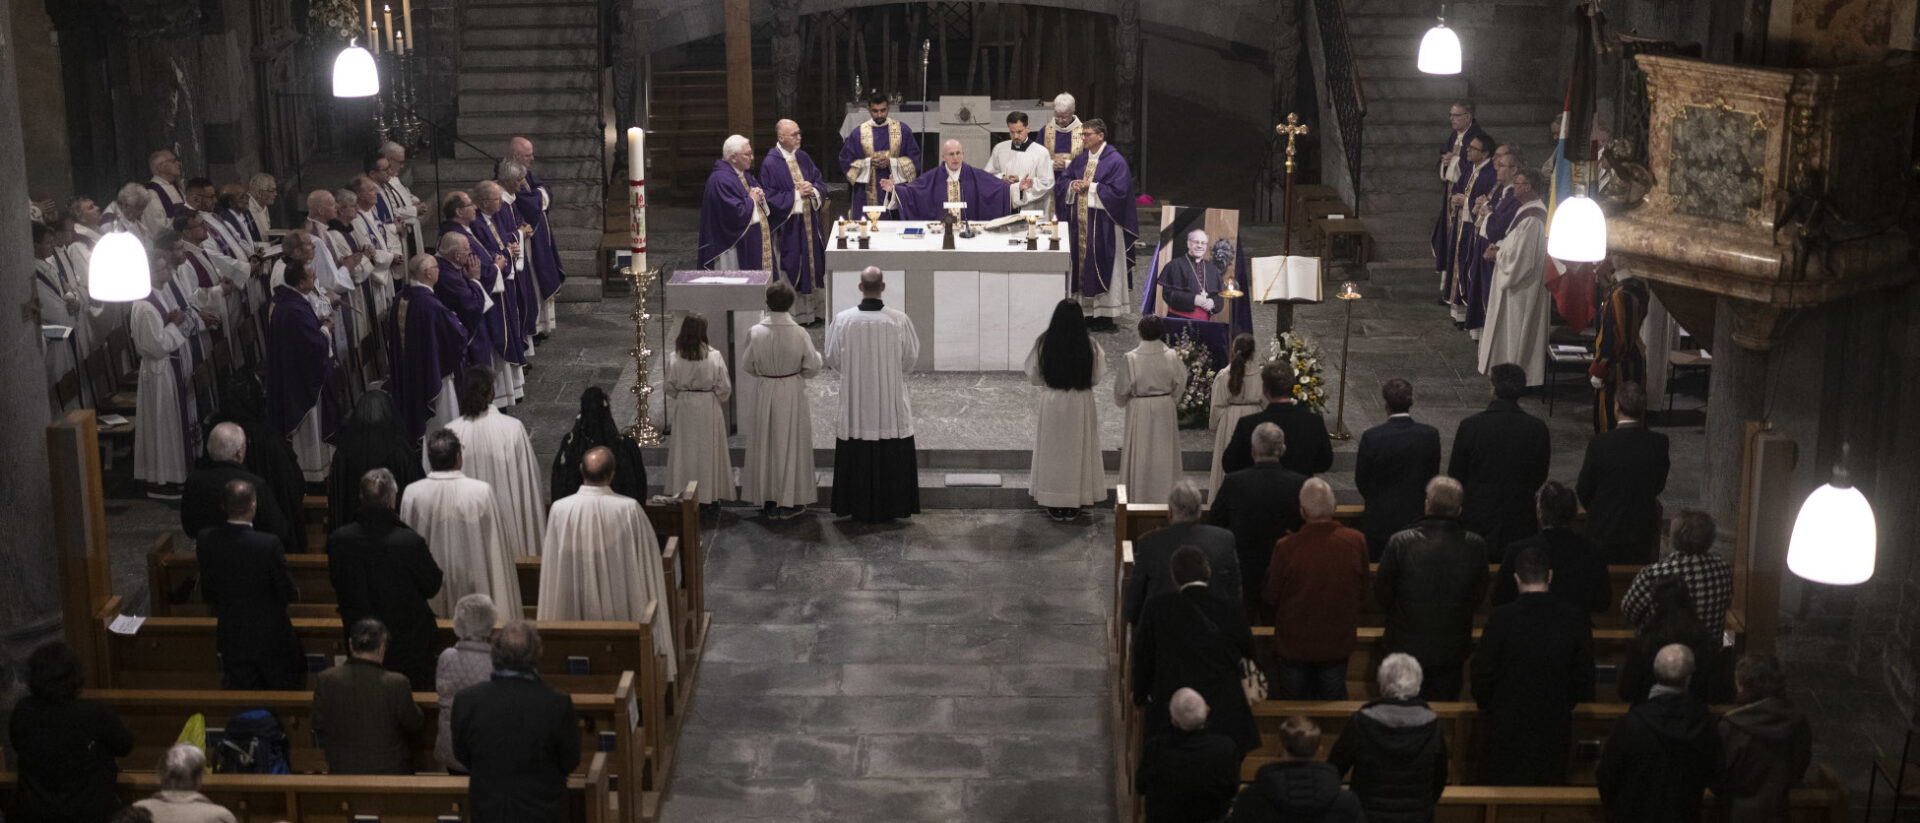 Eucharistiefeier mit Bischöfen, Domherren, Priestern, Diakonen.